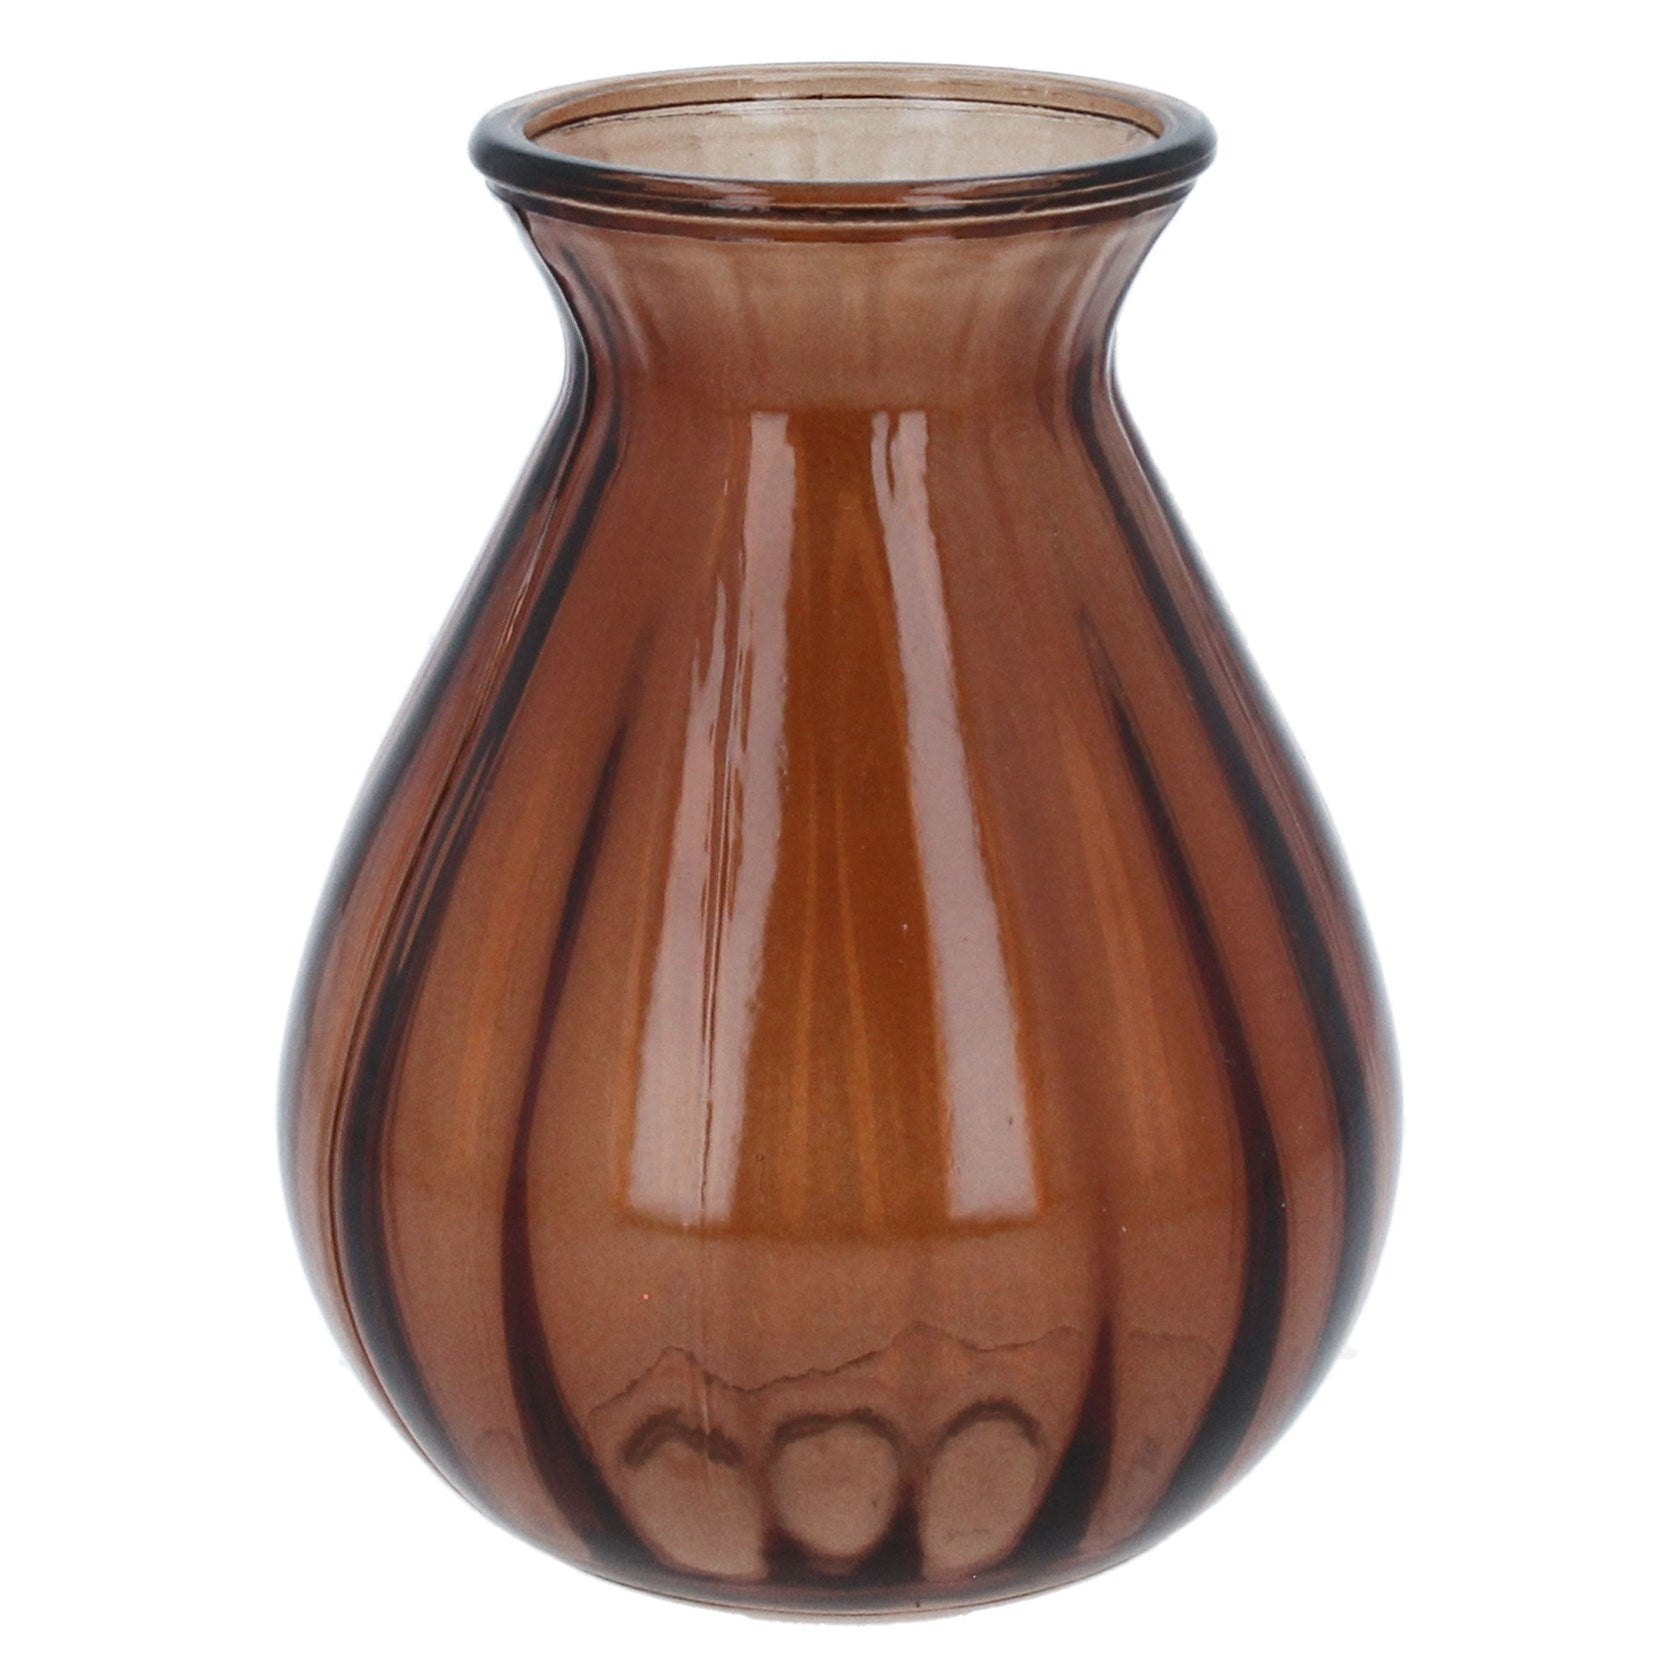 Dark amber glass posy vase